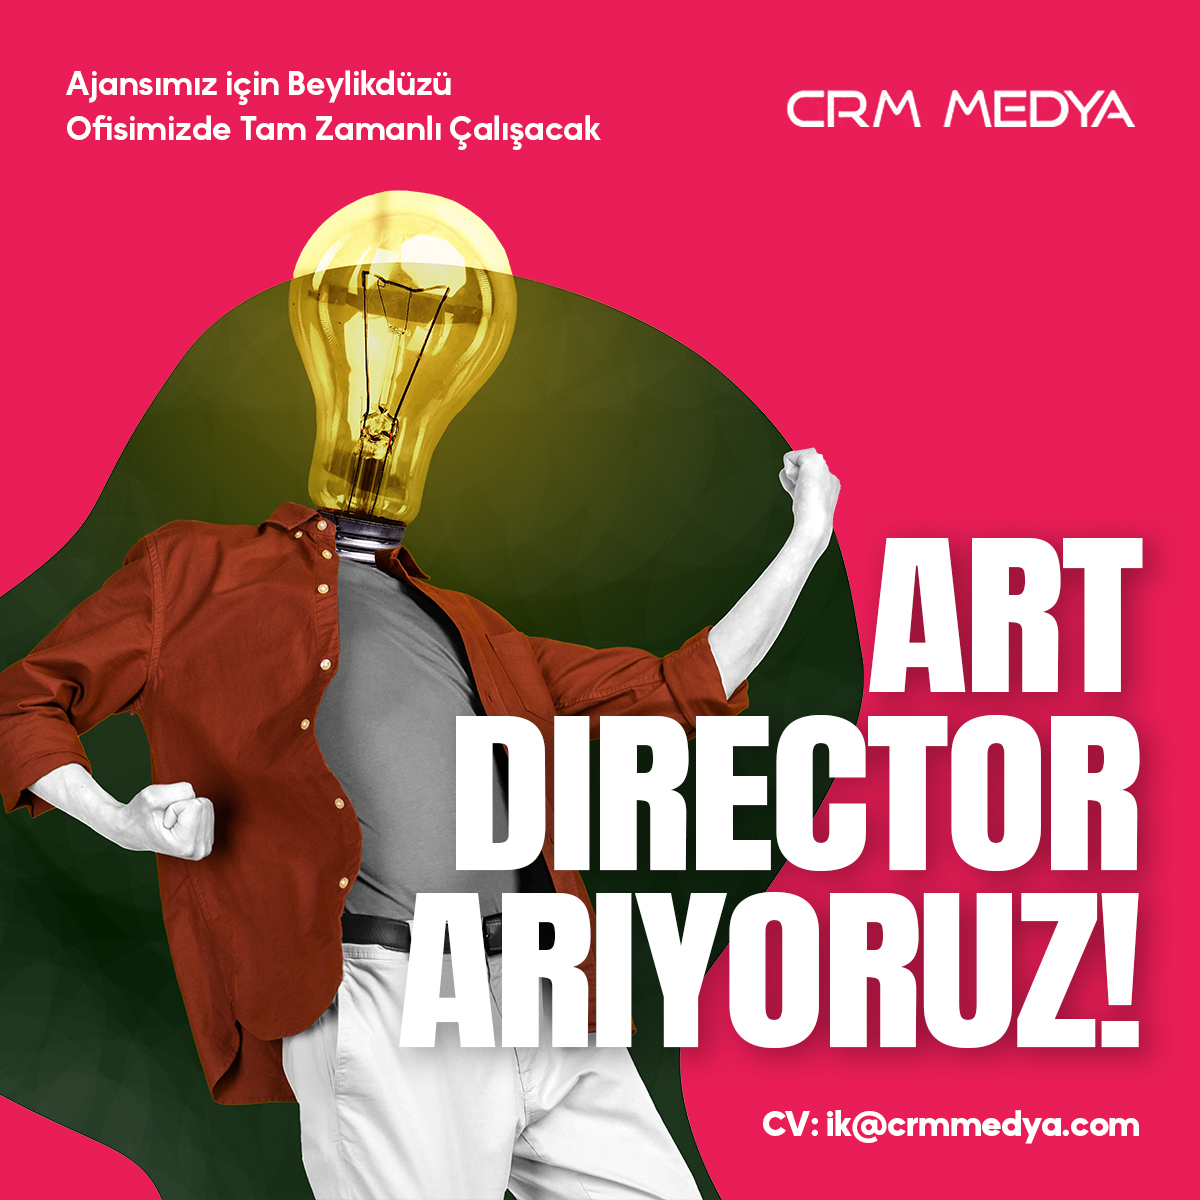 <strong>CRM Medya Beylikdüzü Ofisinde Çalışmak Üzere Art Director arıyor!</strong>